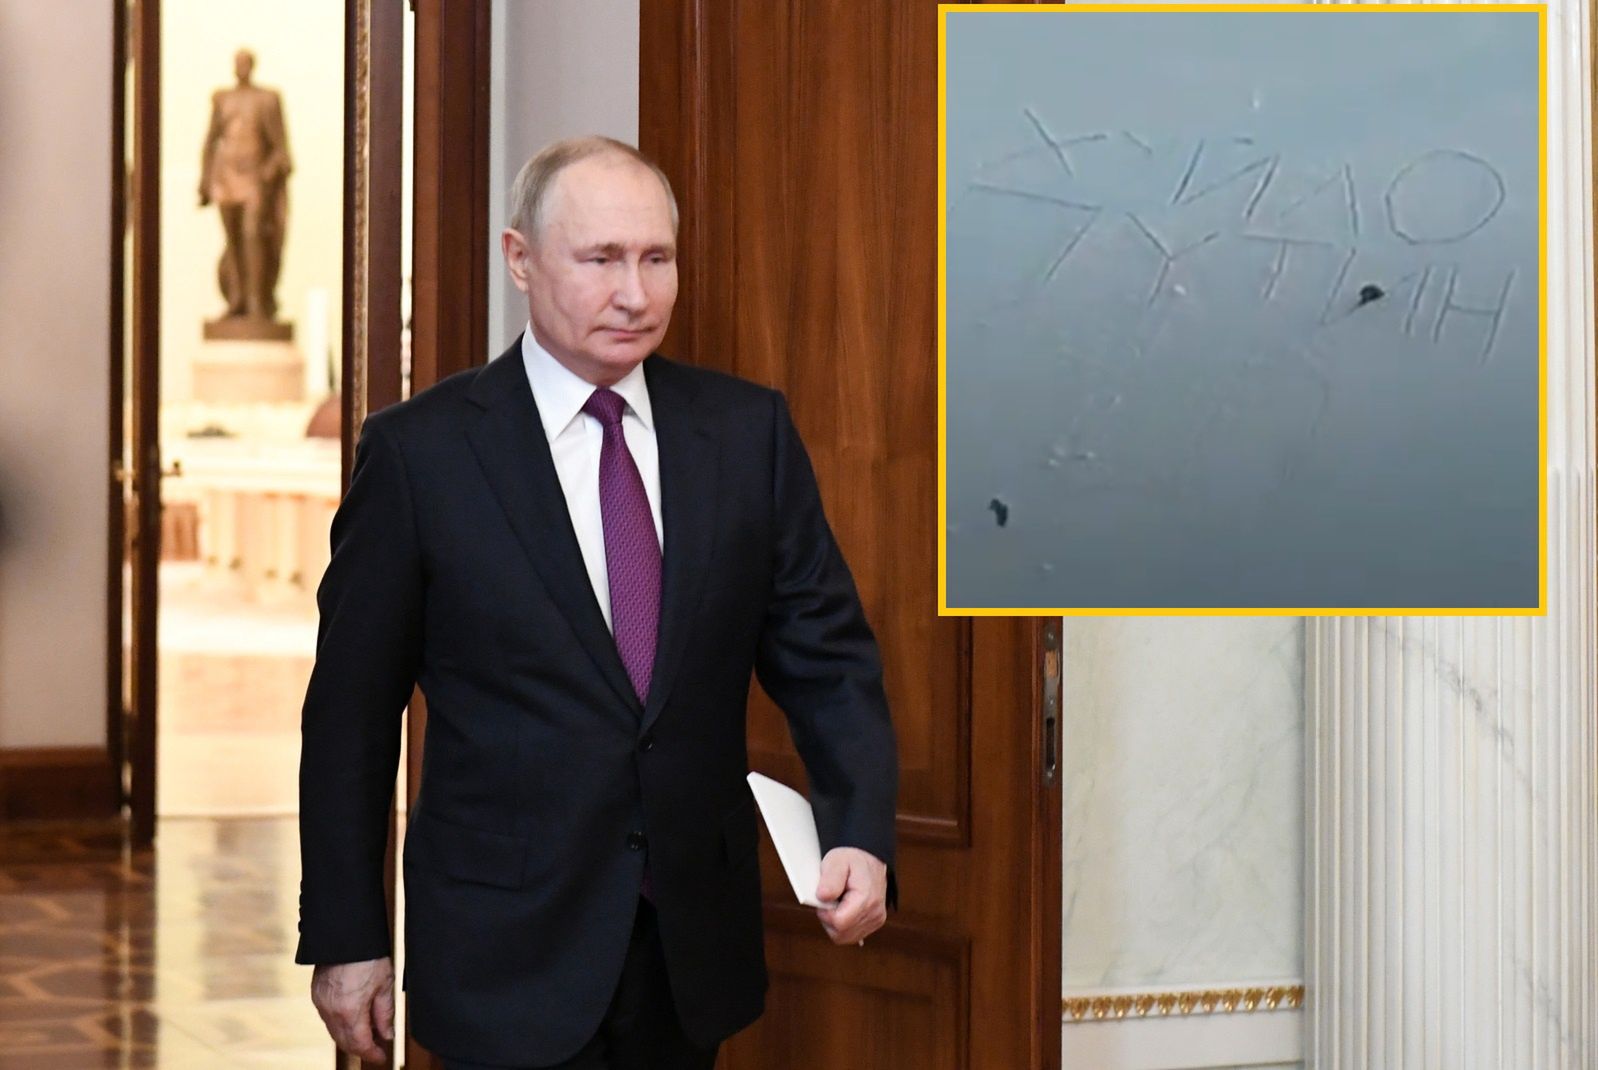 Przywódca odwiedził Kreml. Obywatele pokazali, co sądzą o Putinie